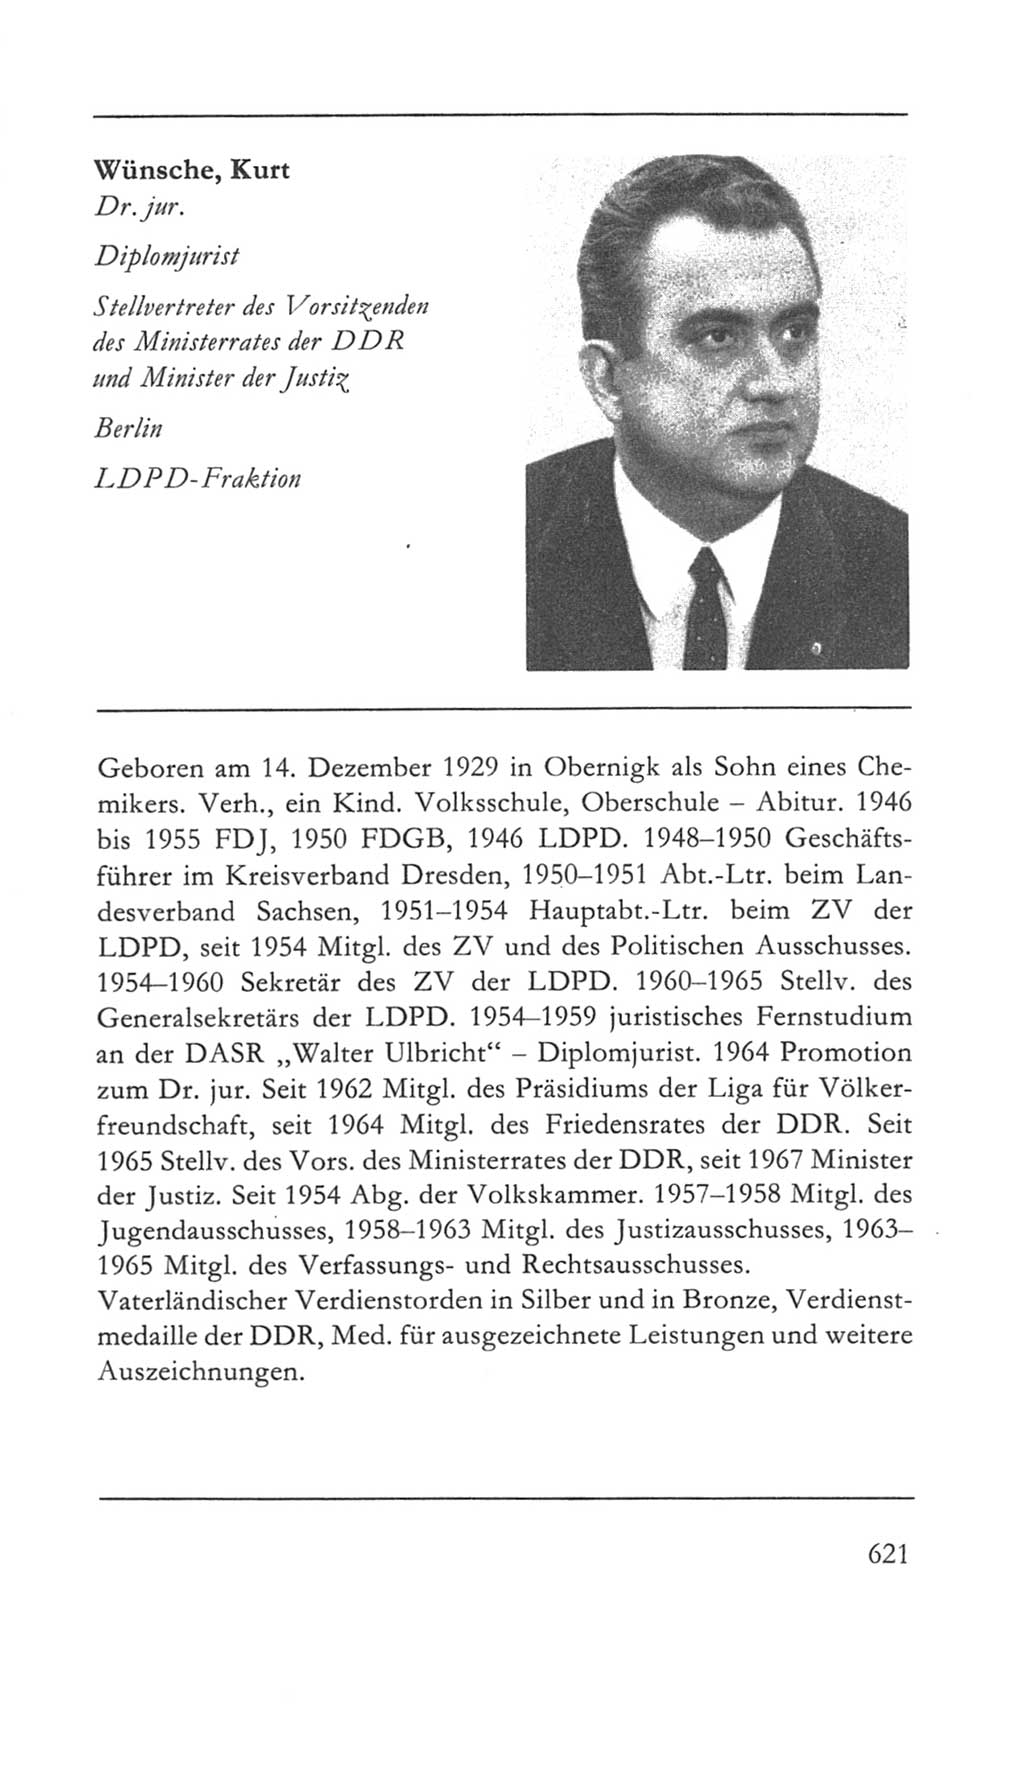 Volkskammer (VK) der Deutschen Demokratischen Republik (DDR) 5. Wahlperiode 1967-1971, Seite 621 (VK. DDR 5. WP. 1967-1971, S. 621)